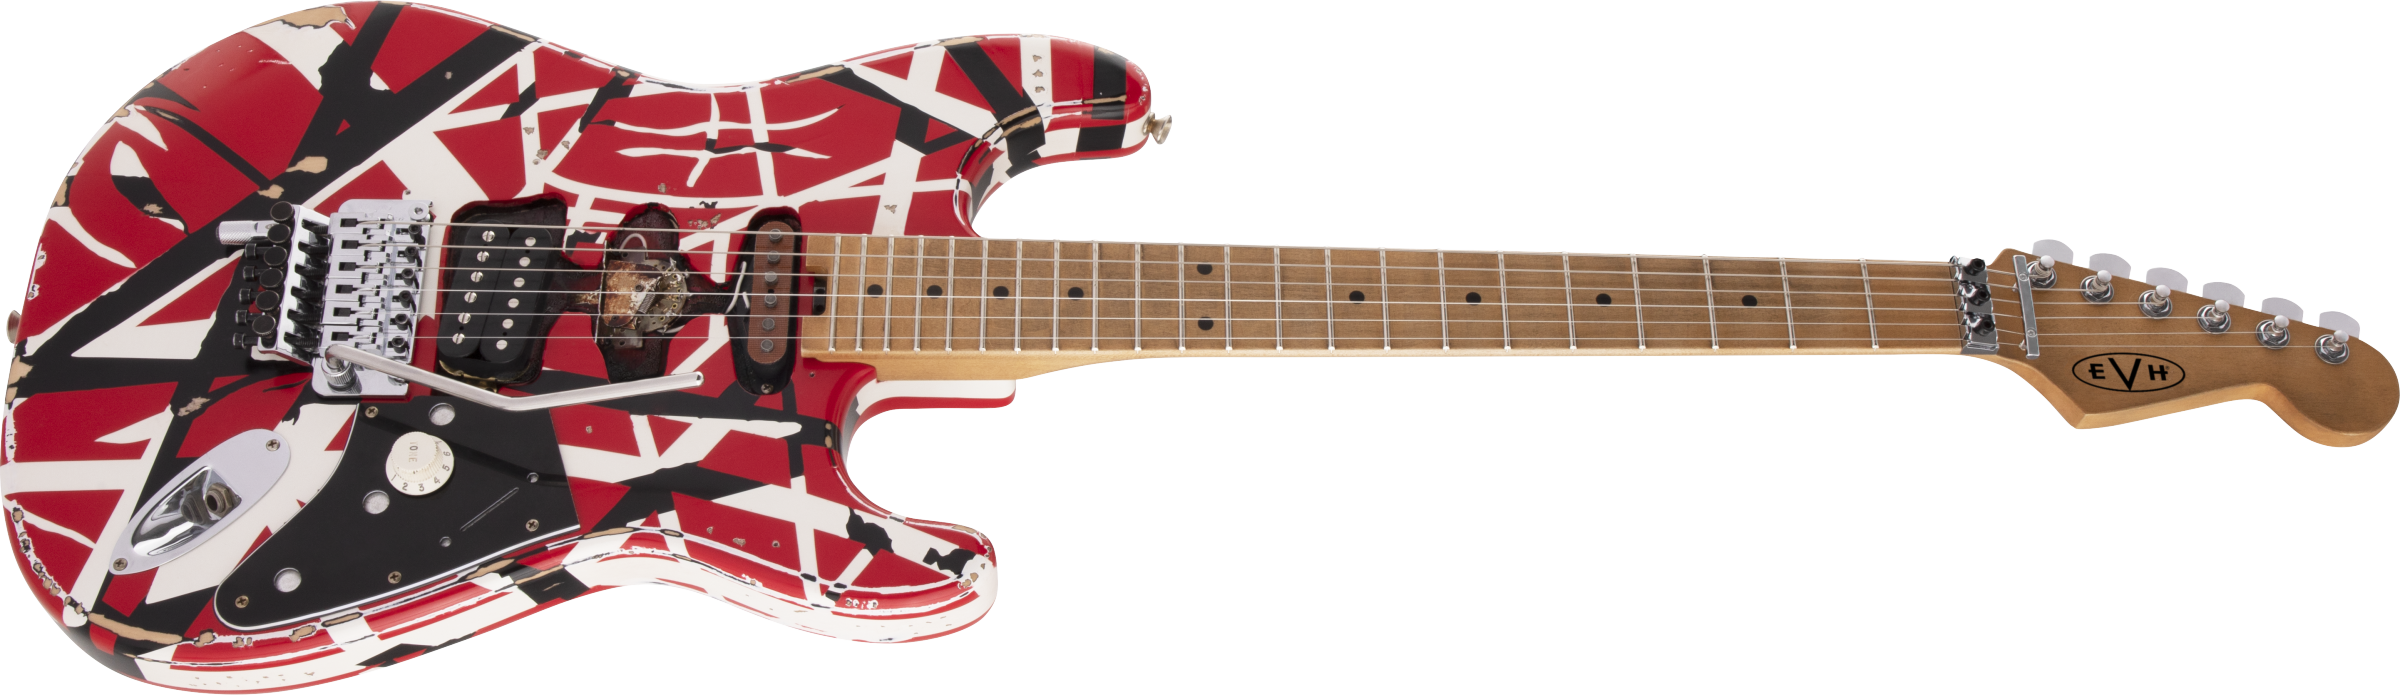 Evh Eddie Van Halen Frankenstein Frankie Striped Series Mex H Fr Mn - Red With Black & White Stripes - Elektrische gitaar in Str-vorm - Variation 2